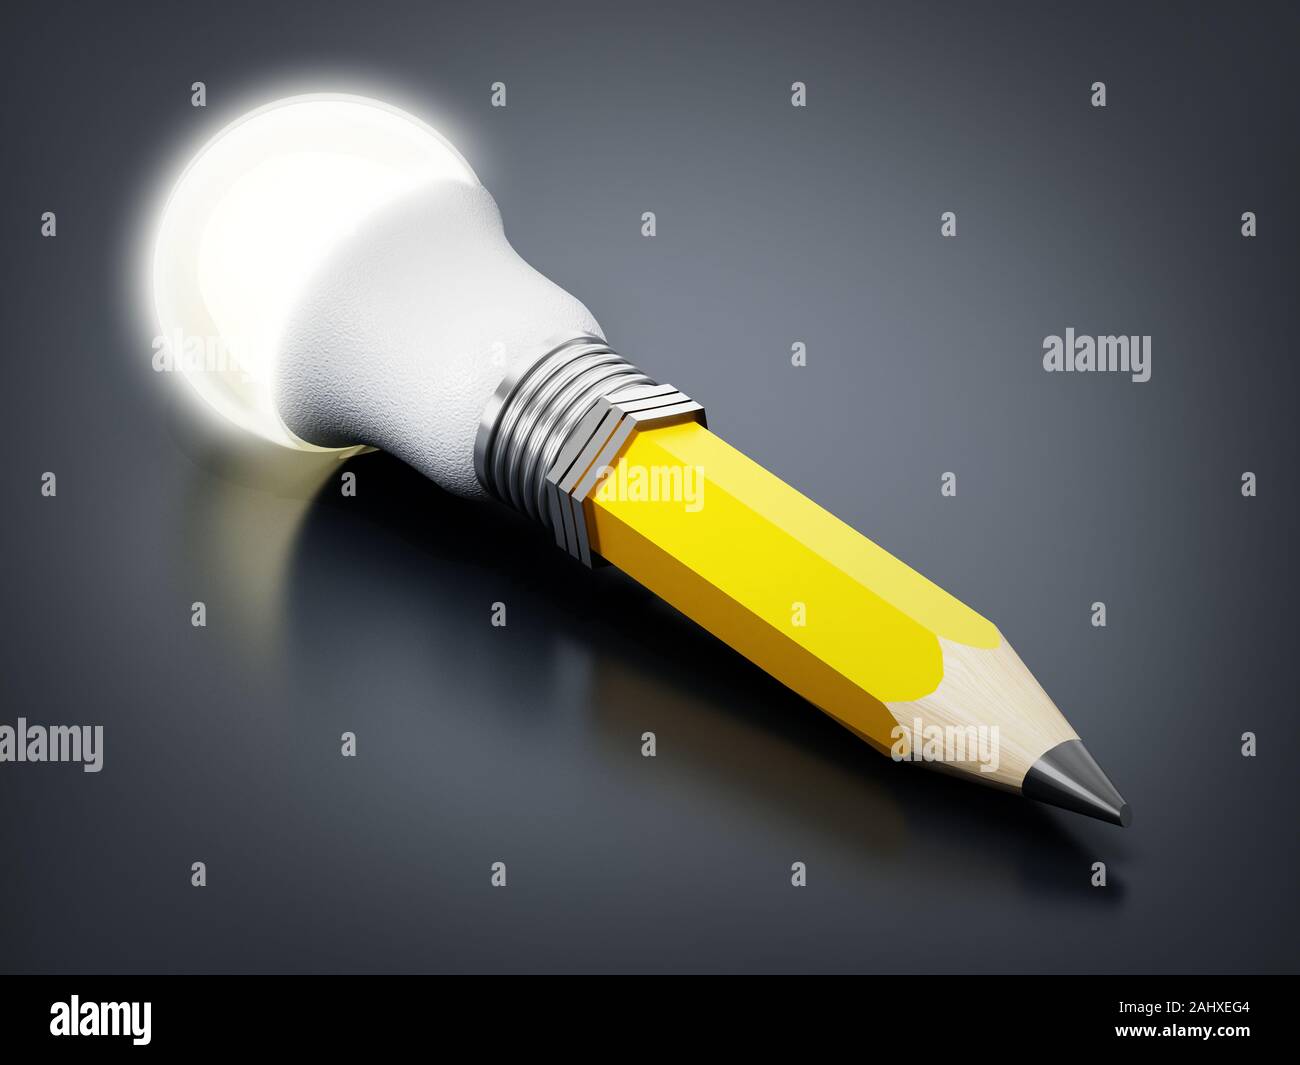 Bleistift mit atached Glühbirne auf schwarzem Hintergrund. 3D-Darstellung. Stockfoto